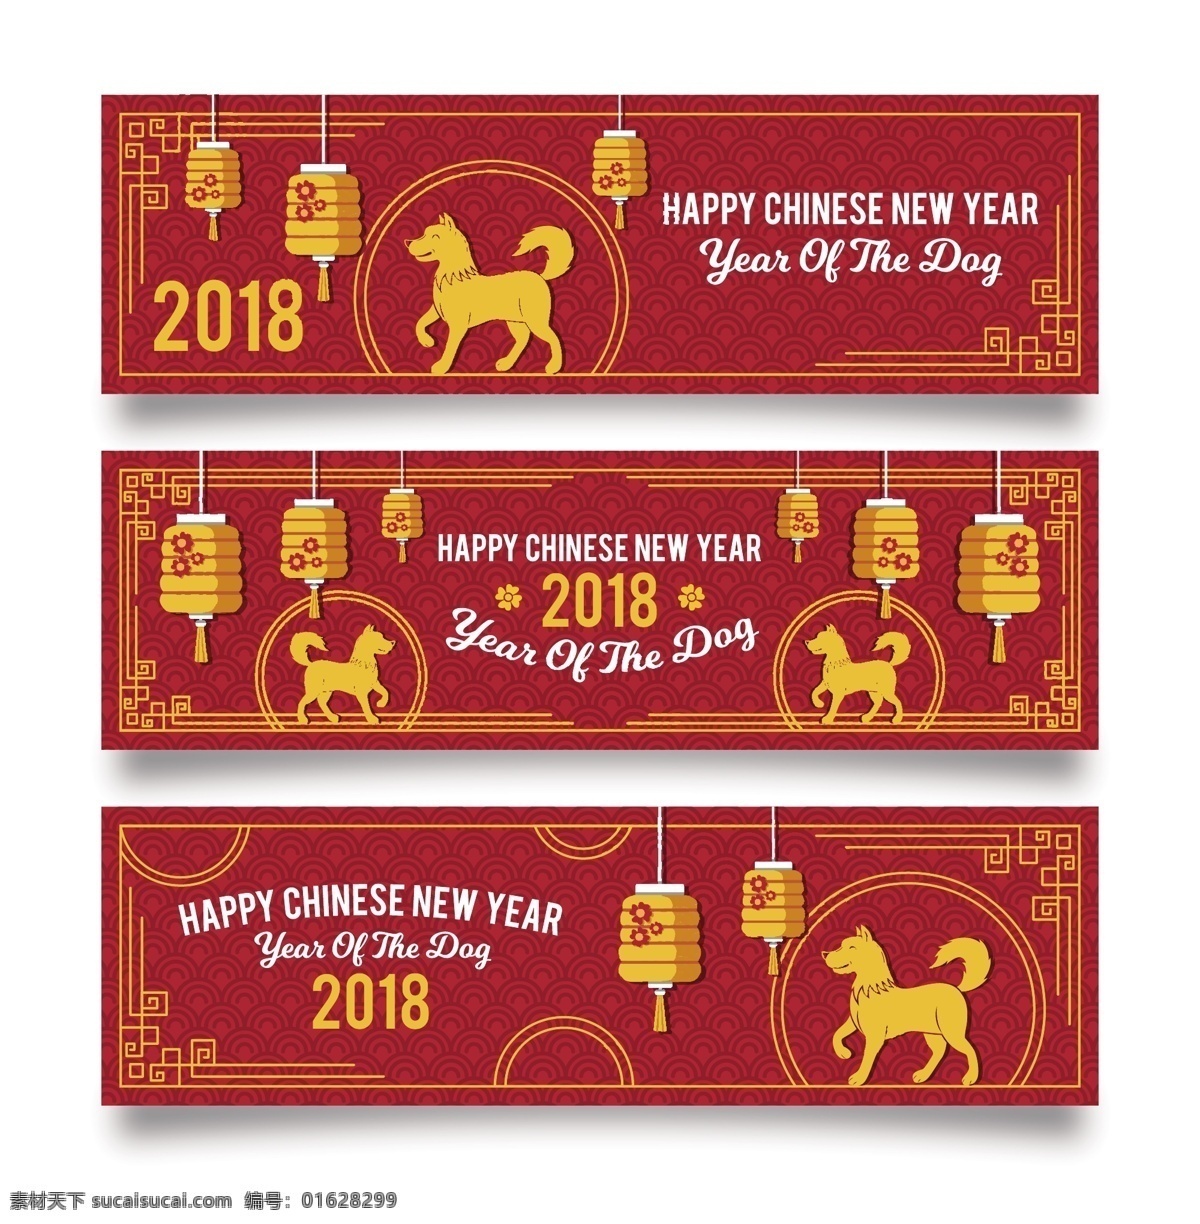 2018 新年 快乐 狗年 标签 狗年标签 过年 红包喜庆 节日标签 节日元素 模板 模板素材 年货 年货模板 年货素材 元旦素材